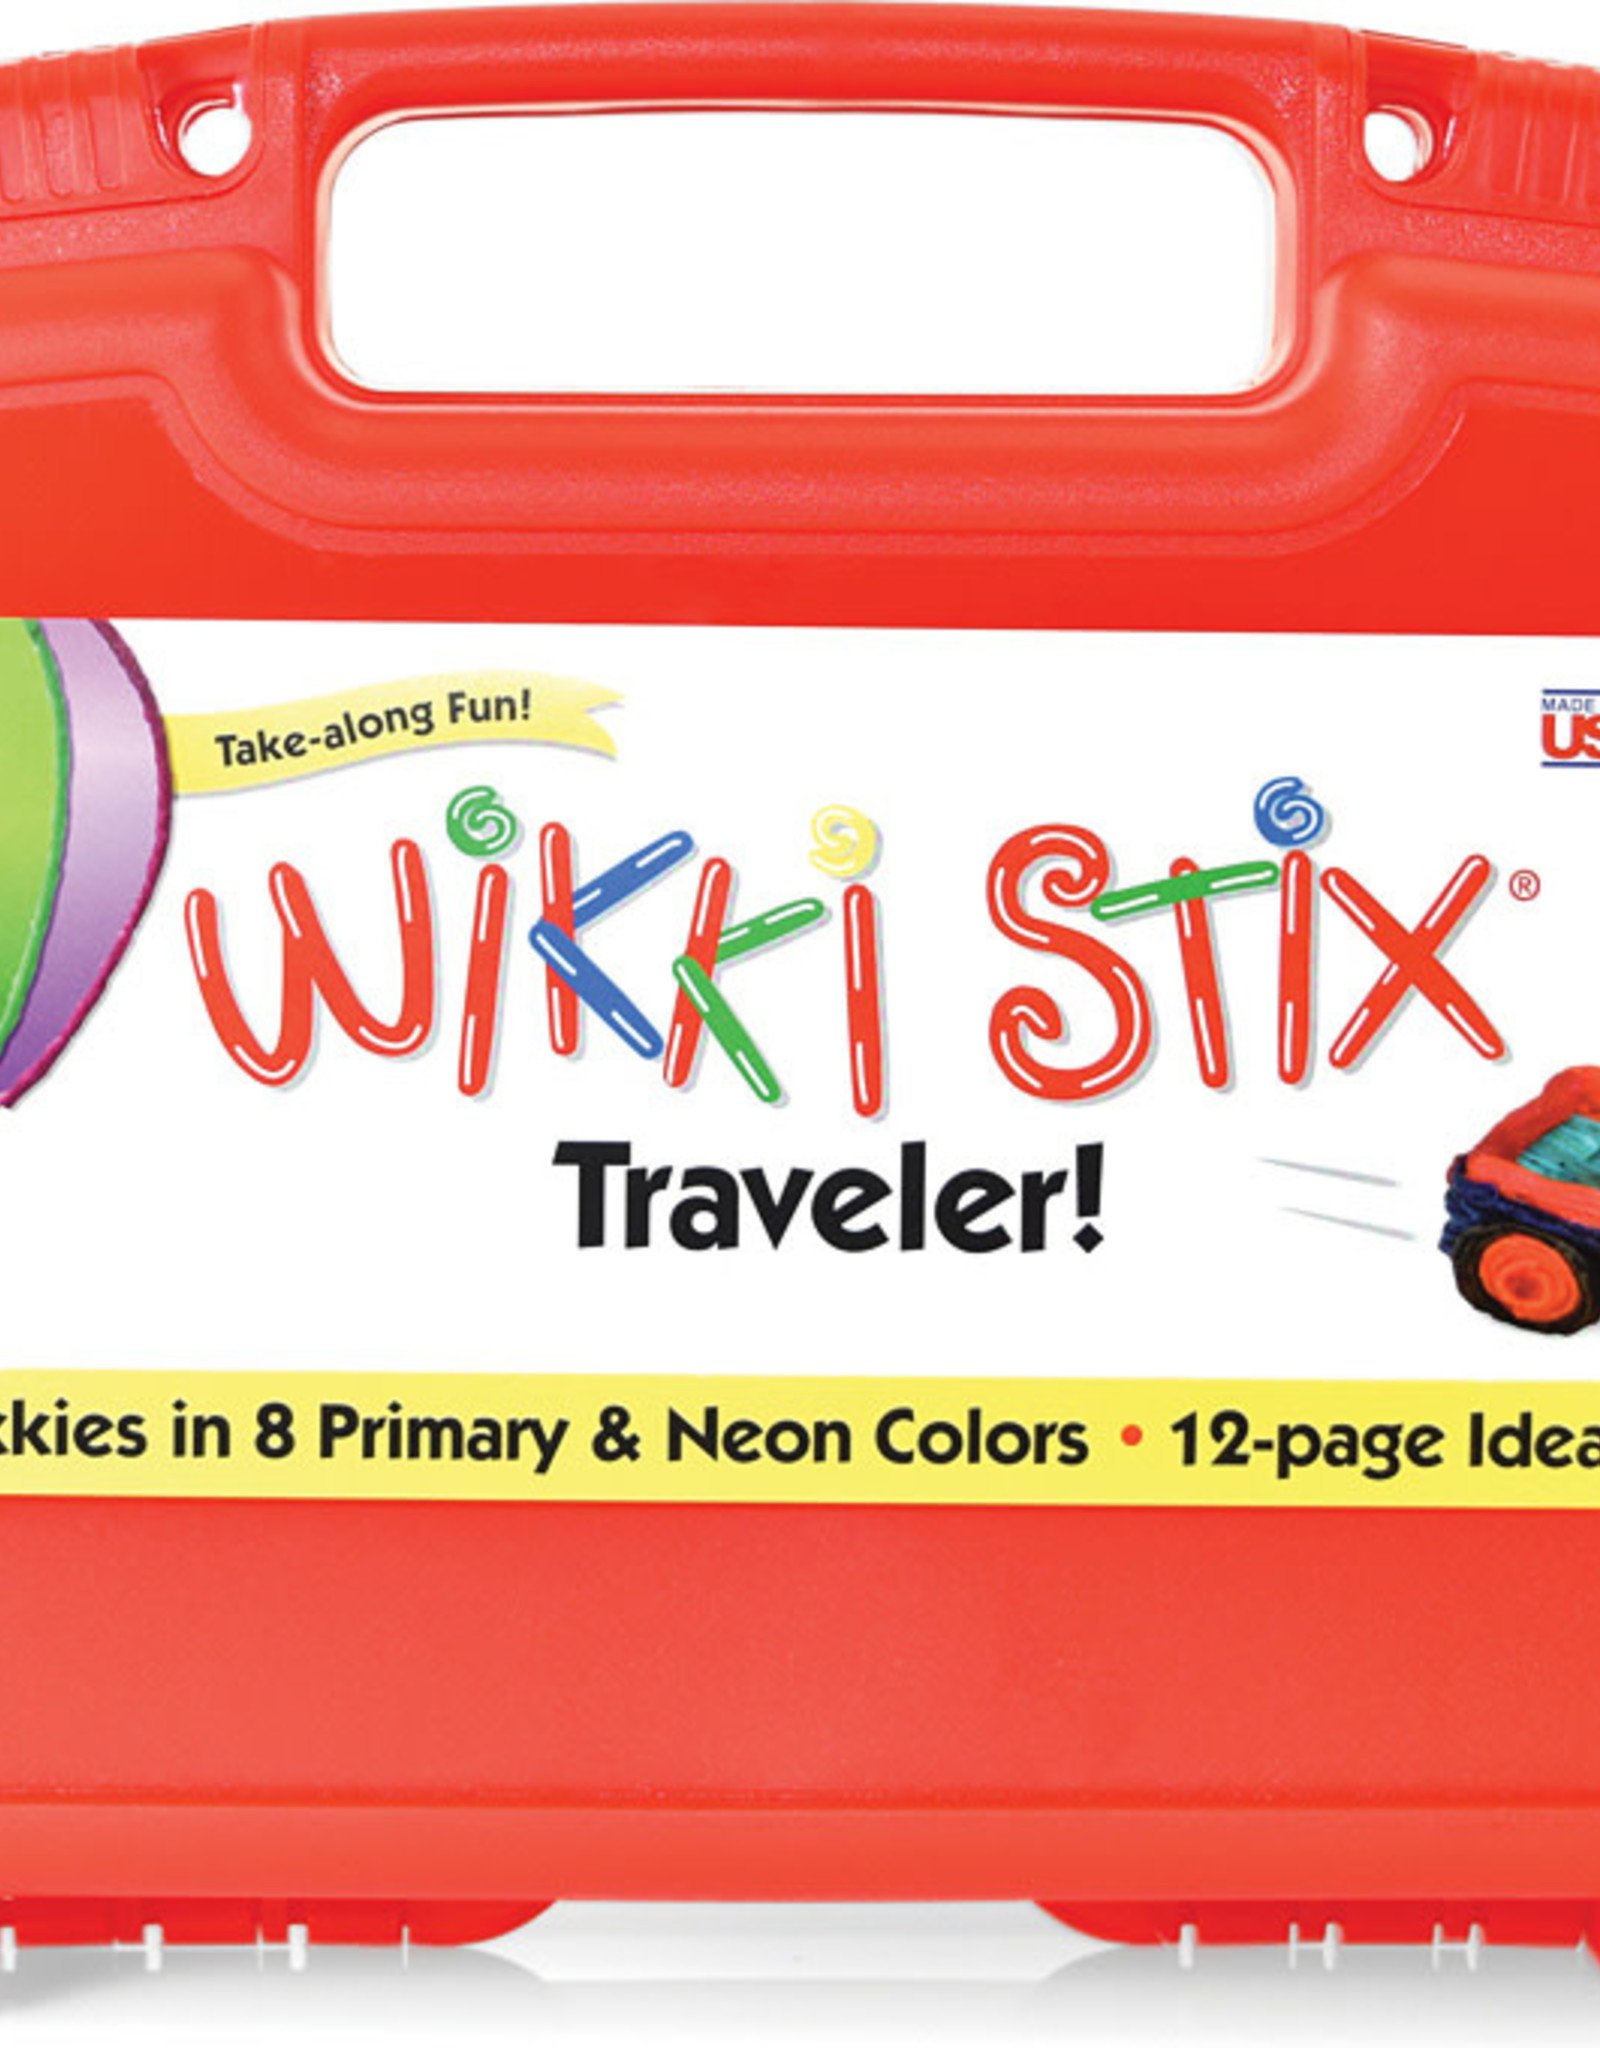 Wikki Stix Traveler Case